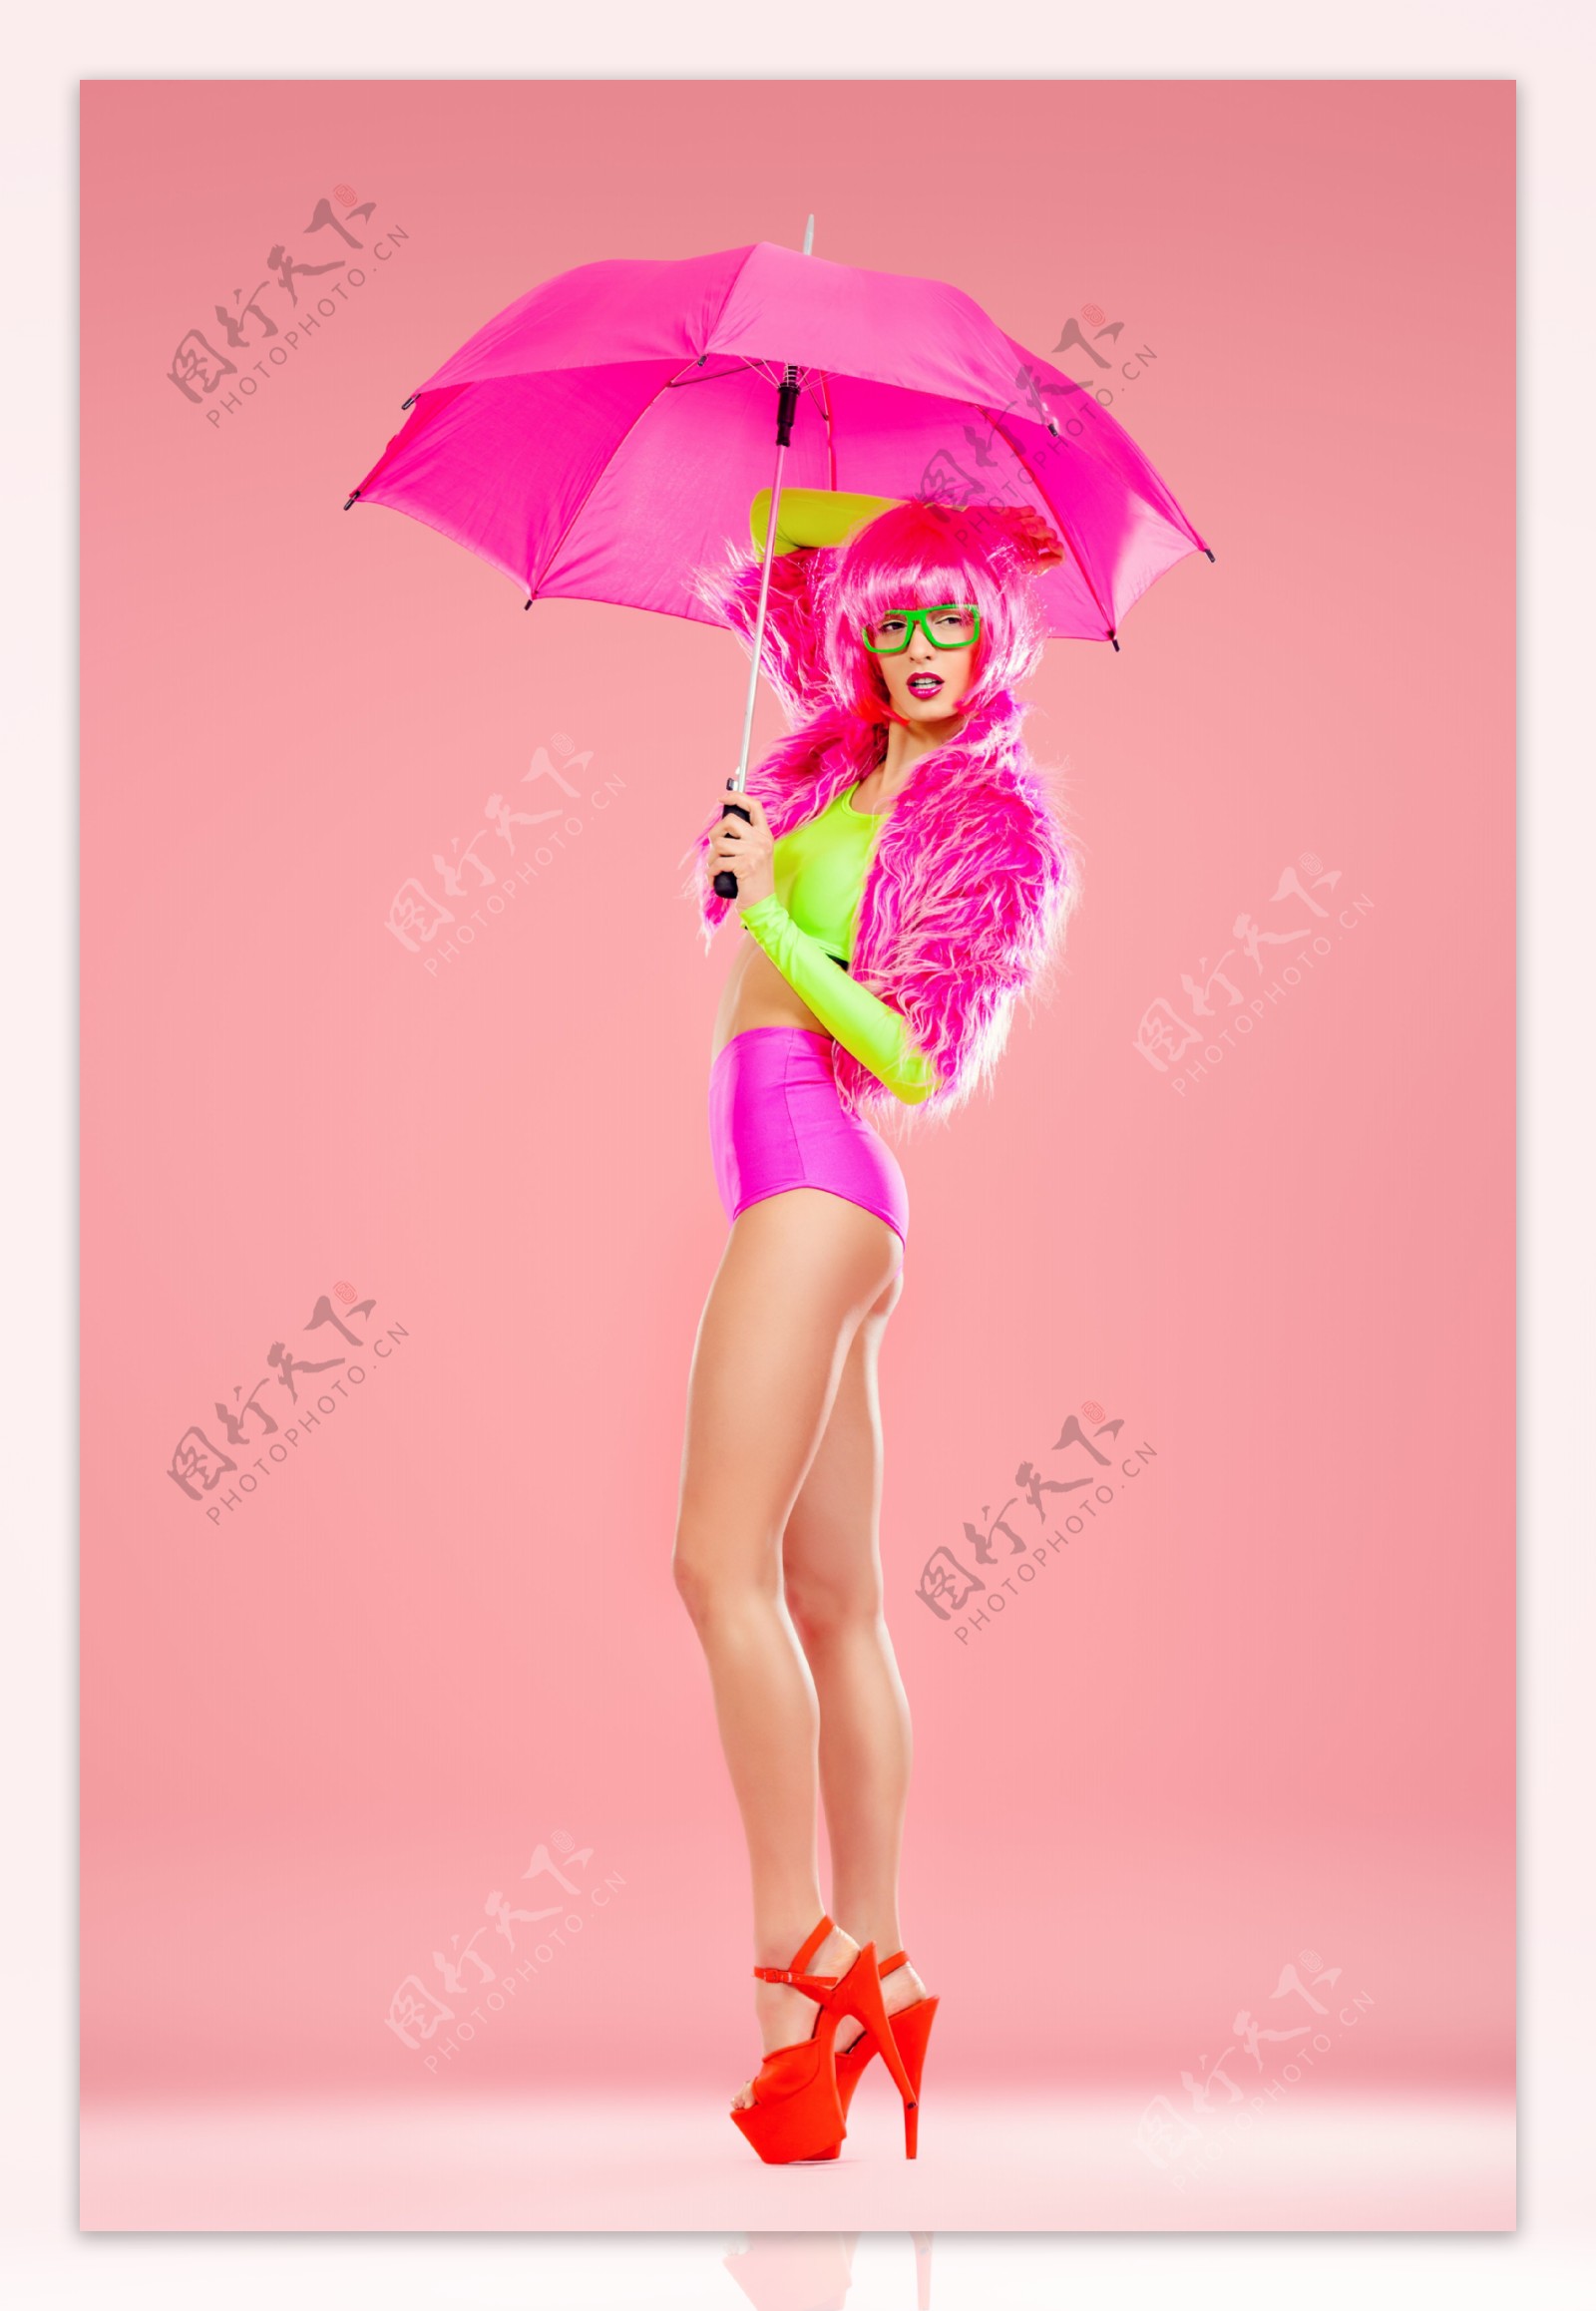 打雨伞的性感美腿女孩图片